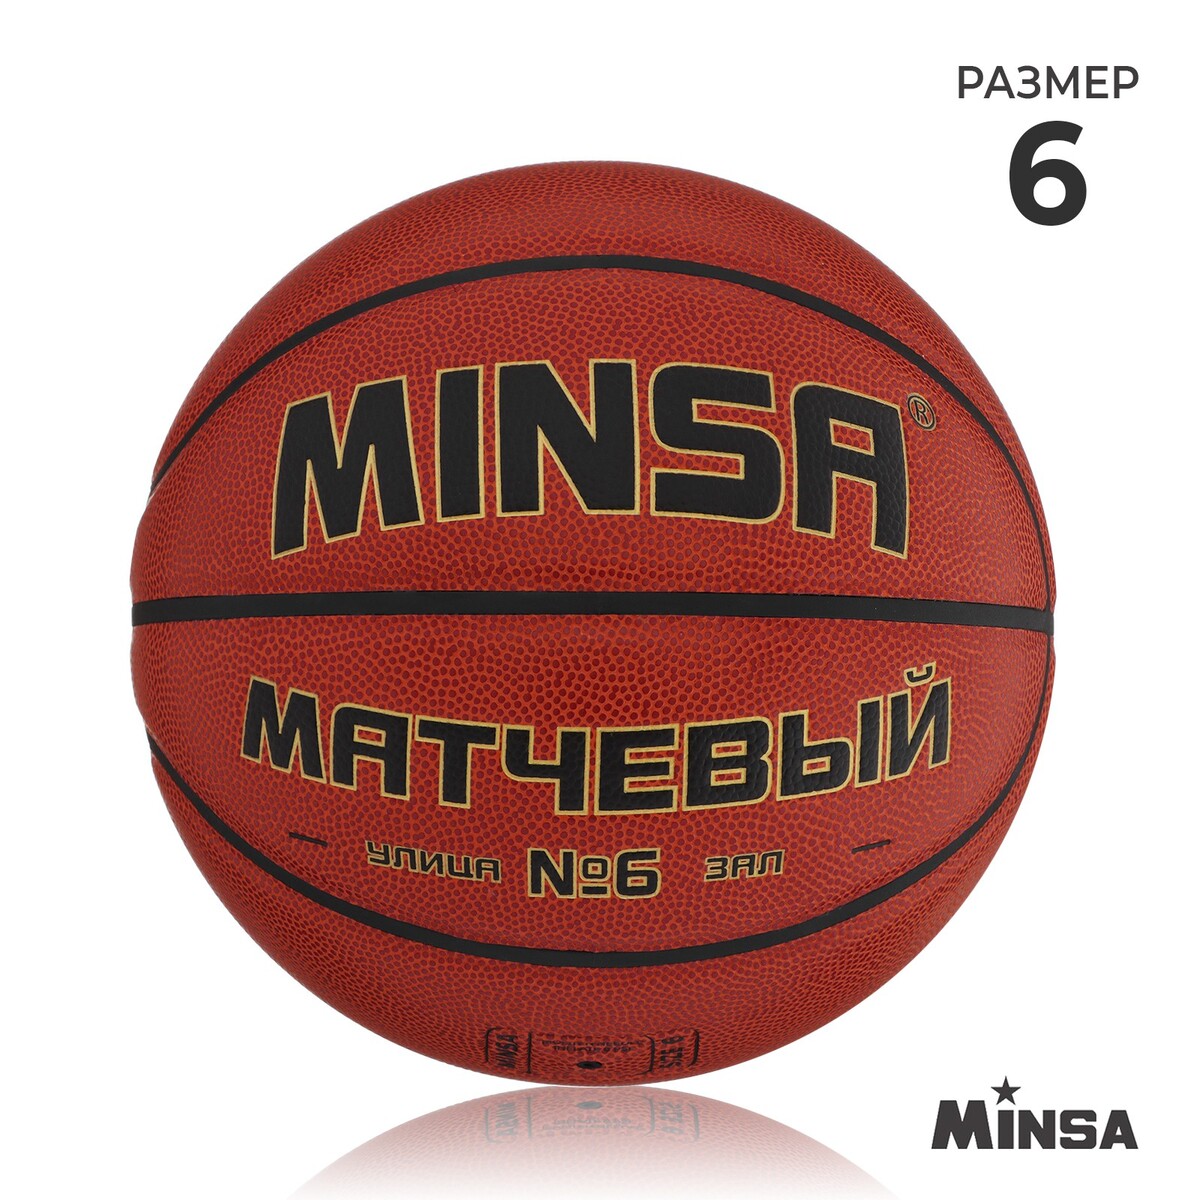 Баскетбольный мяч minsa, матчевый, microfiber pu, клееный, 8 панелей, р. 6 баскетбольный мяч minsa матчевый microfiber pu клееный 8 панелей р 6